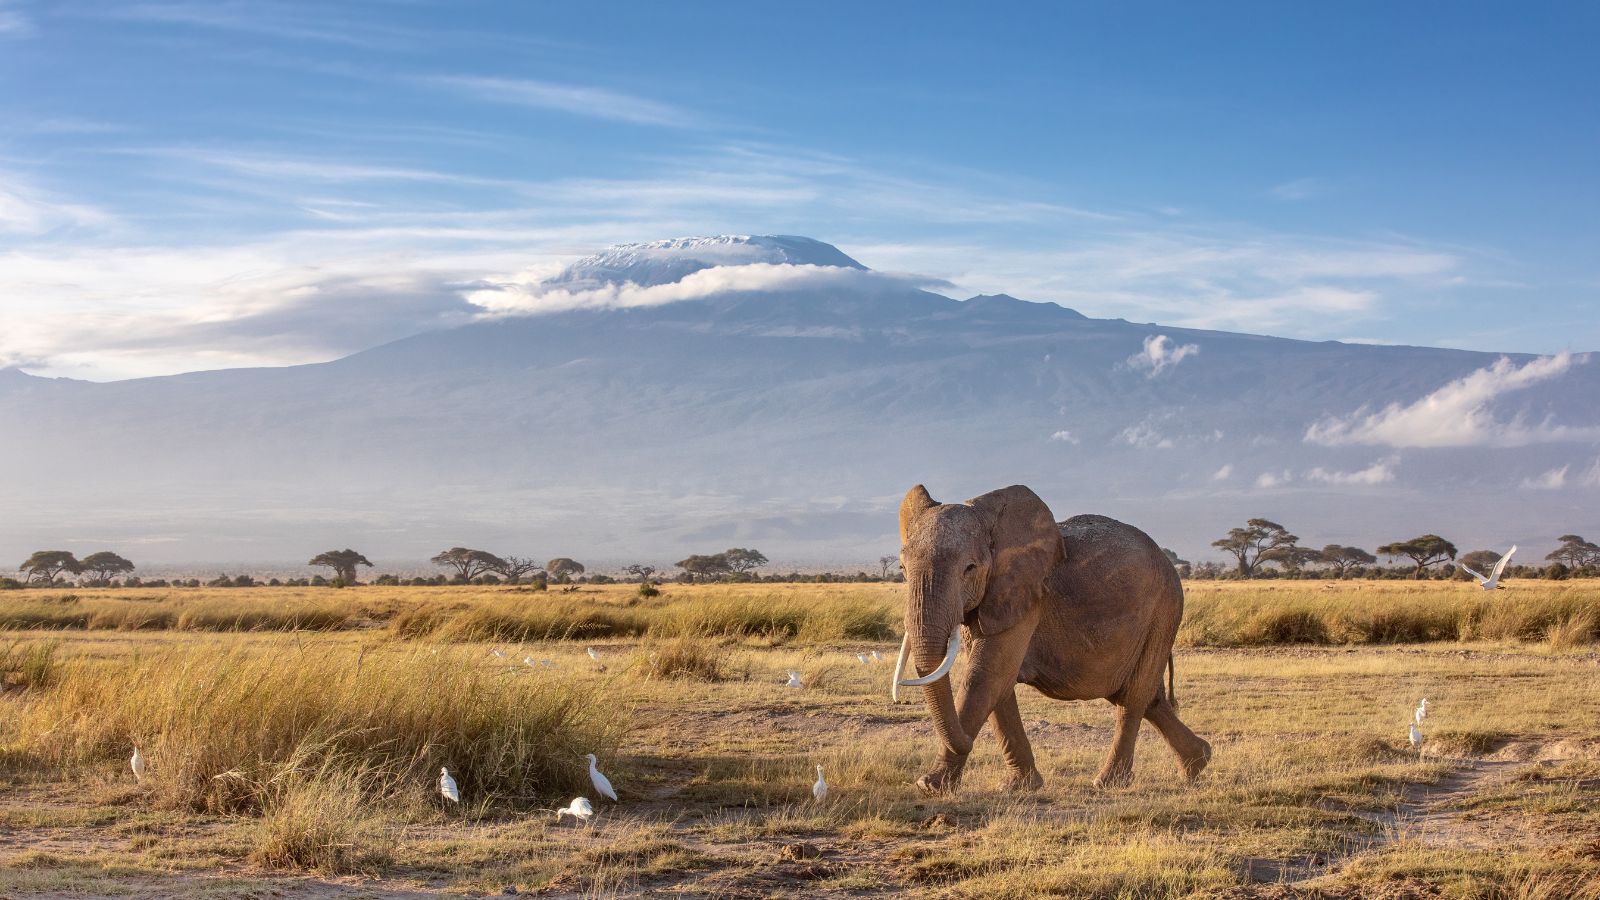 éléphant au pied du Kilimanjaro, dans notre Voyage en Tanzanie organisé en petit groupe de femmes #Tanzanie #safari #voyageentrefemmes #voyage #voyagedegroupe #voyageorganise